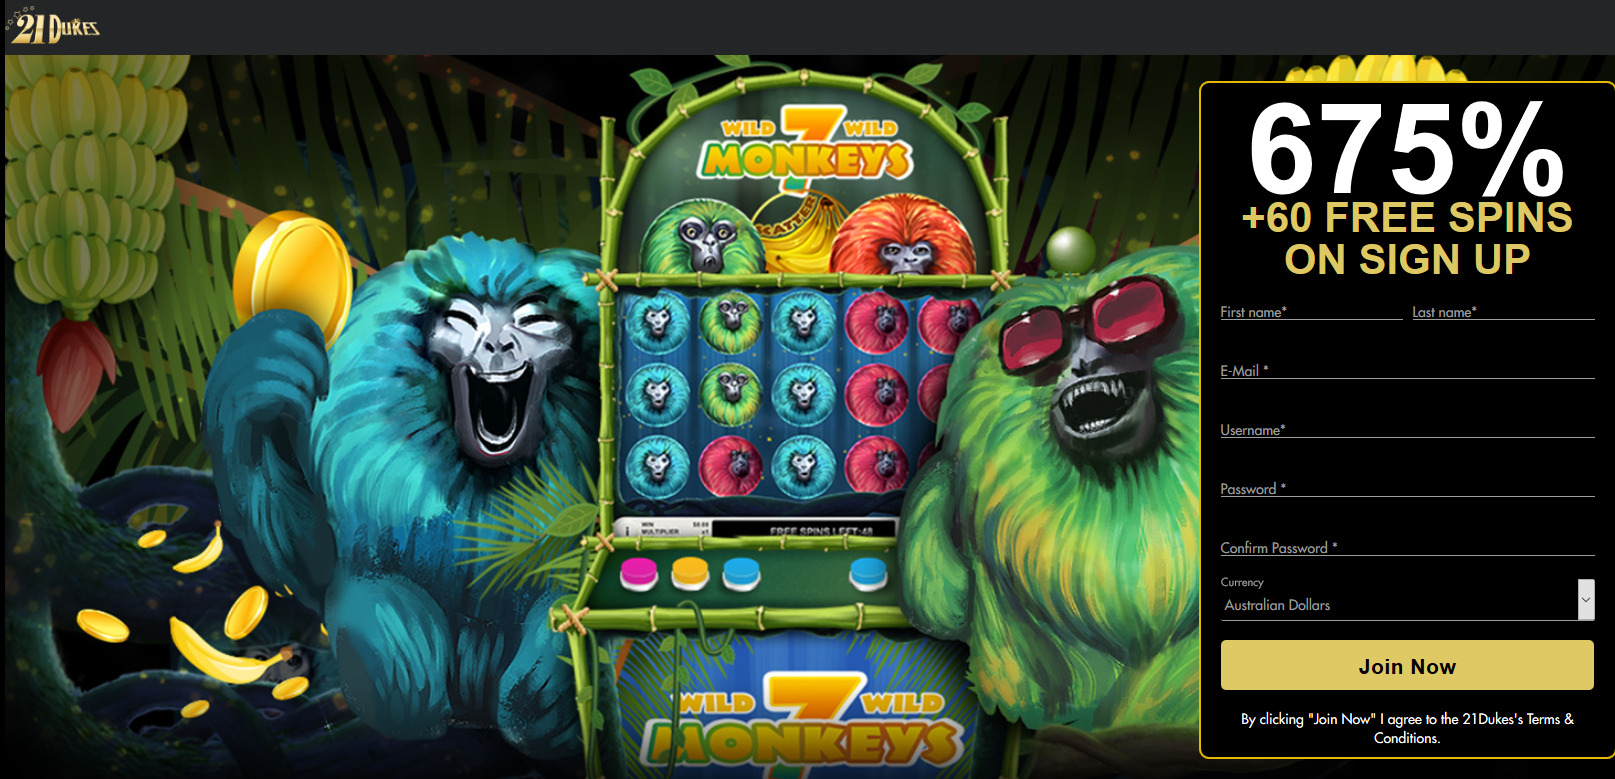 21Dukes Casino 675%
                                                + 60 free spins. Game: 7
                                                Monkeys